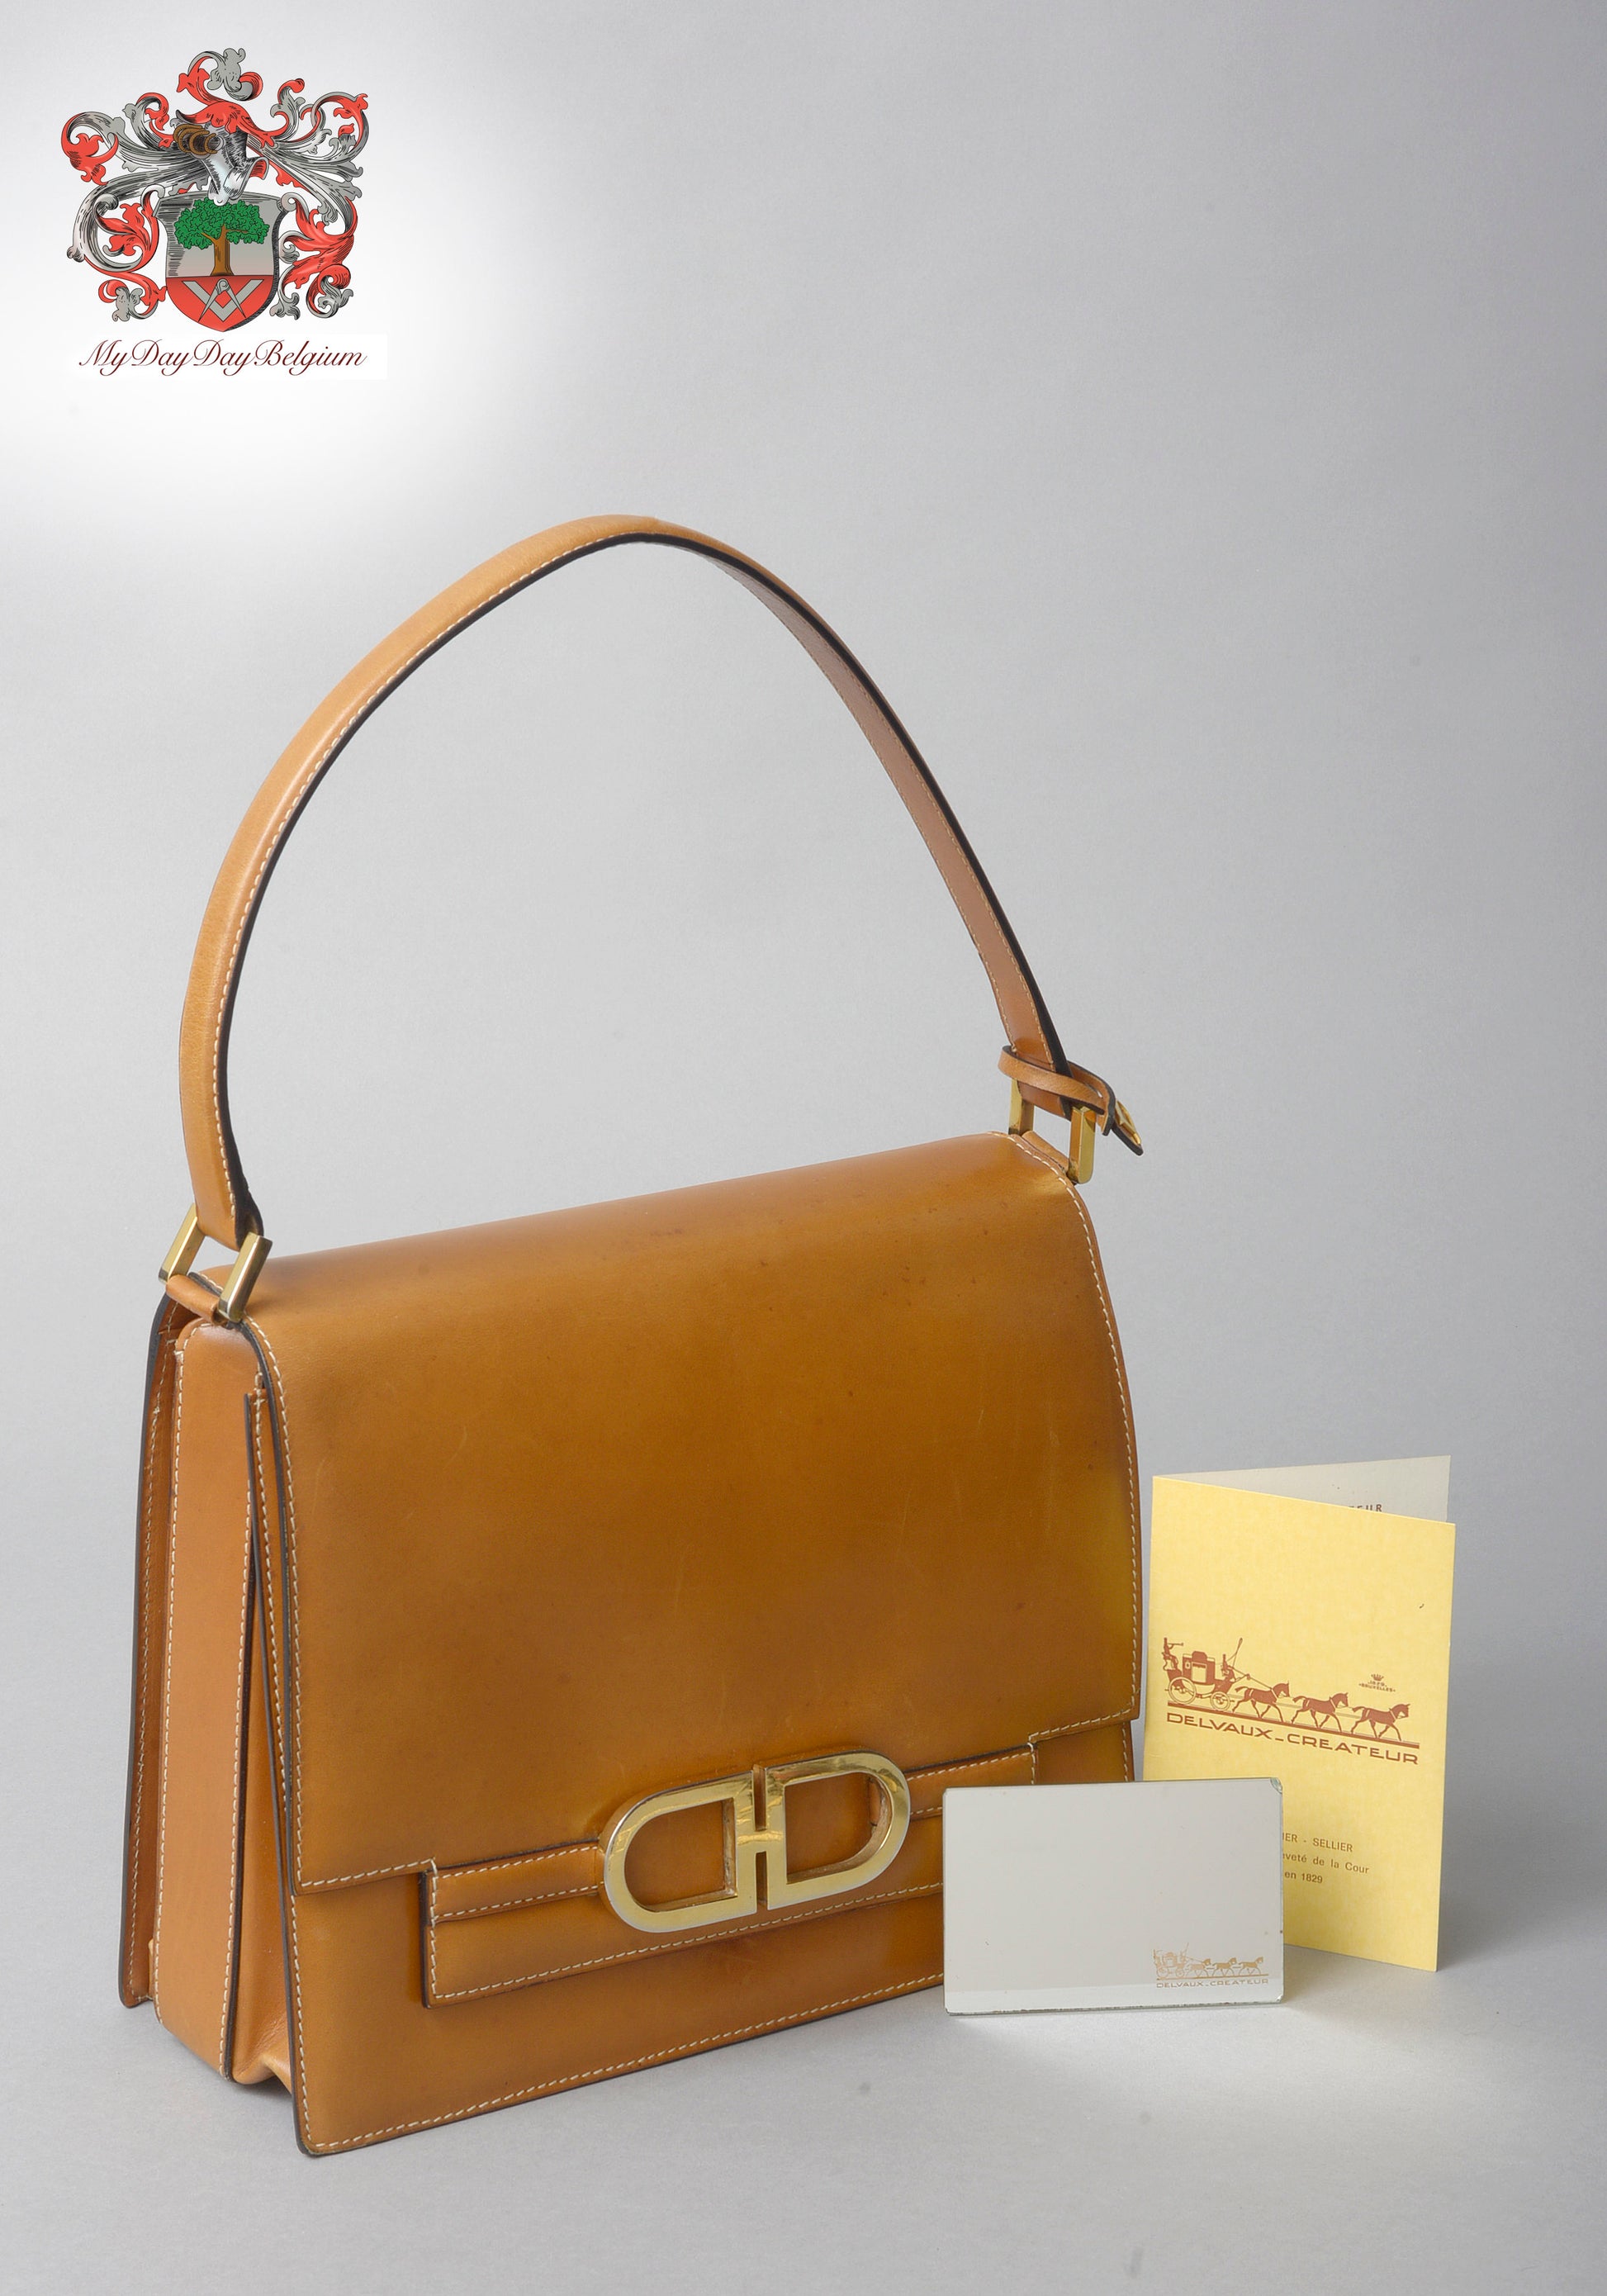 Delvaux Lingot Canvas Shoulder Bag in Brown